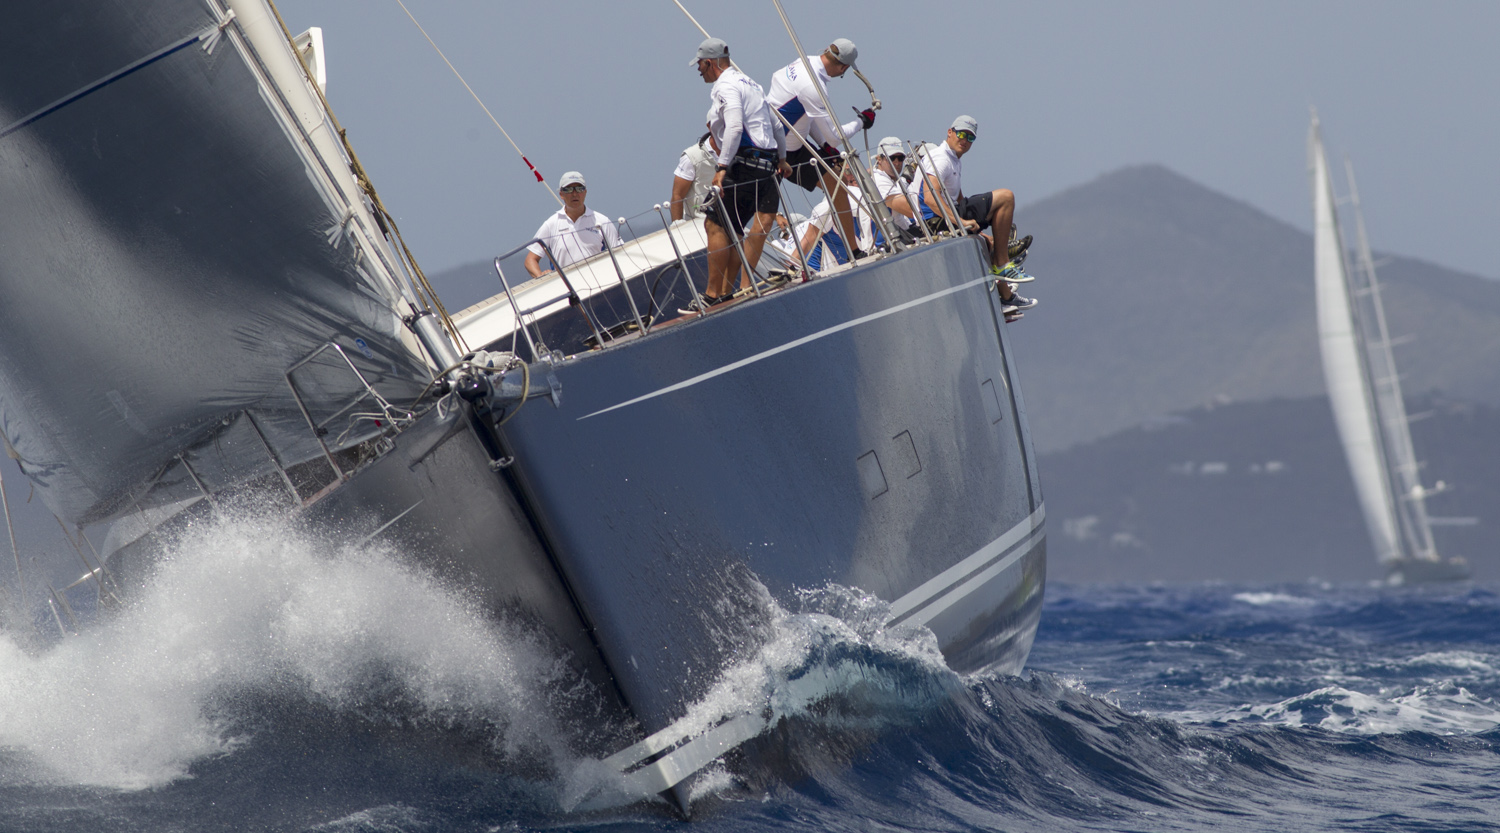 FINALE ELETTRIZZANTE PER LA LORO PIANA CARIBBEAN SUPERYACHT REGATTA & RENDEZVOUS - NEWS - Yacht Club Costa Smeralda